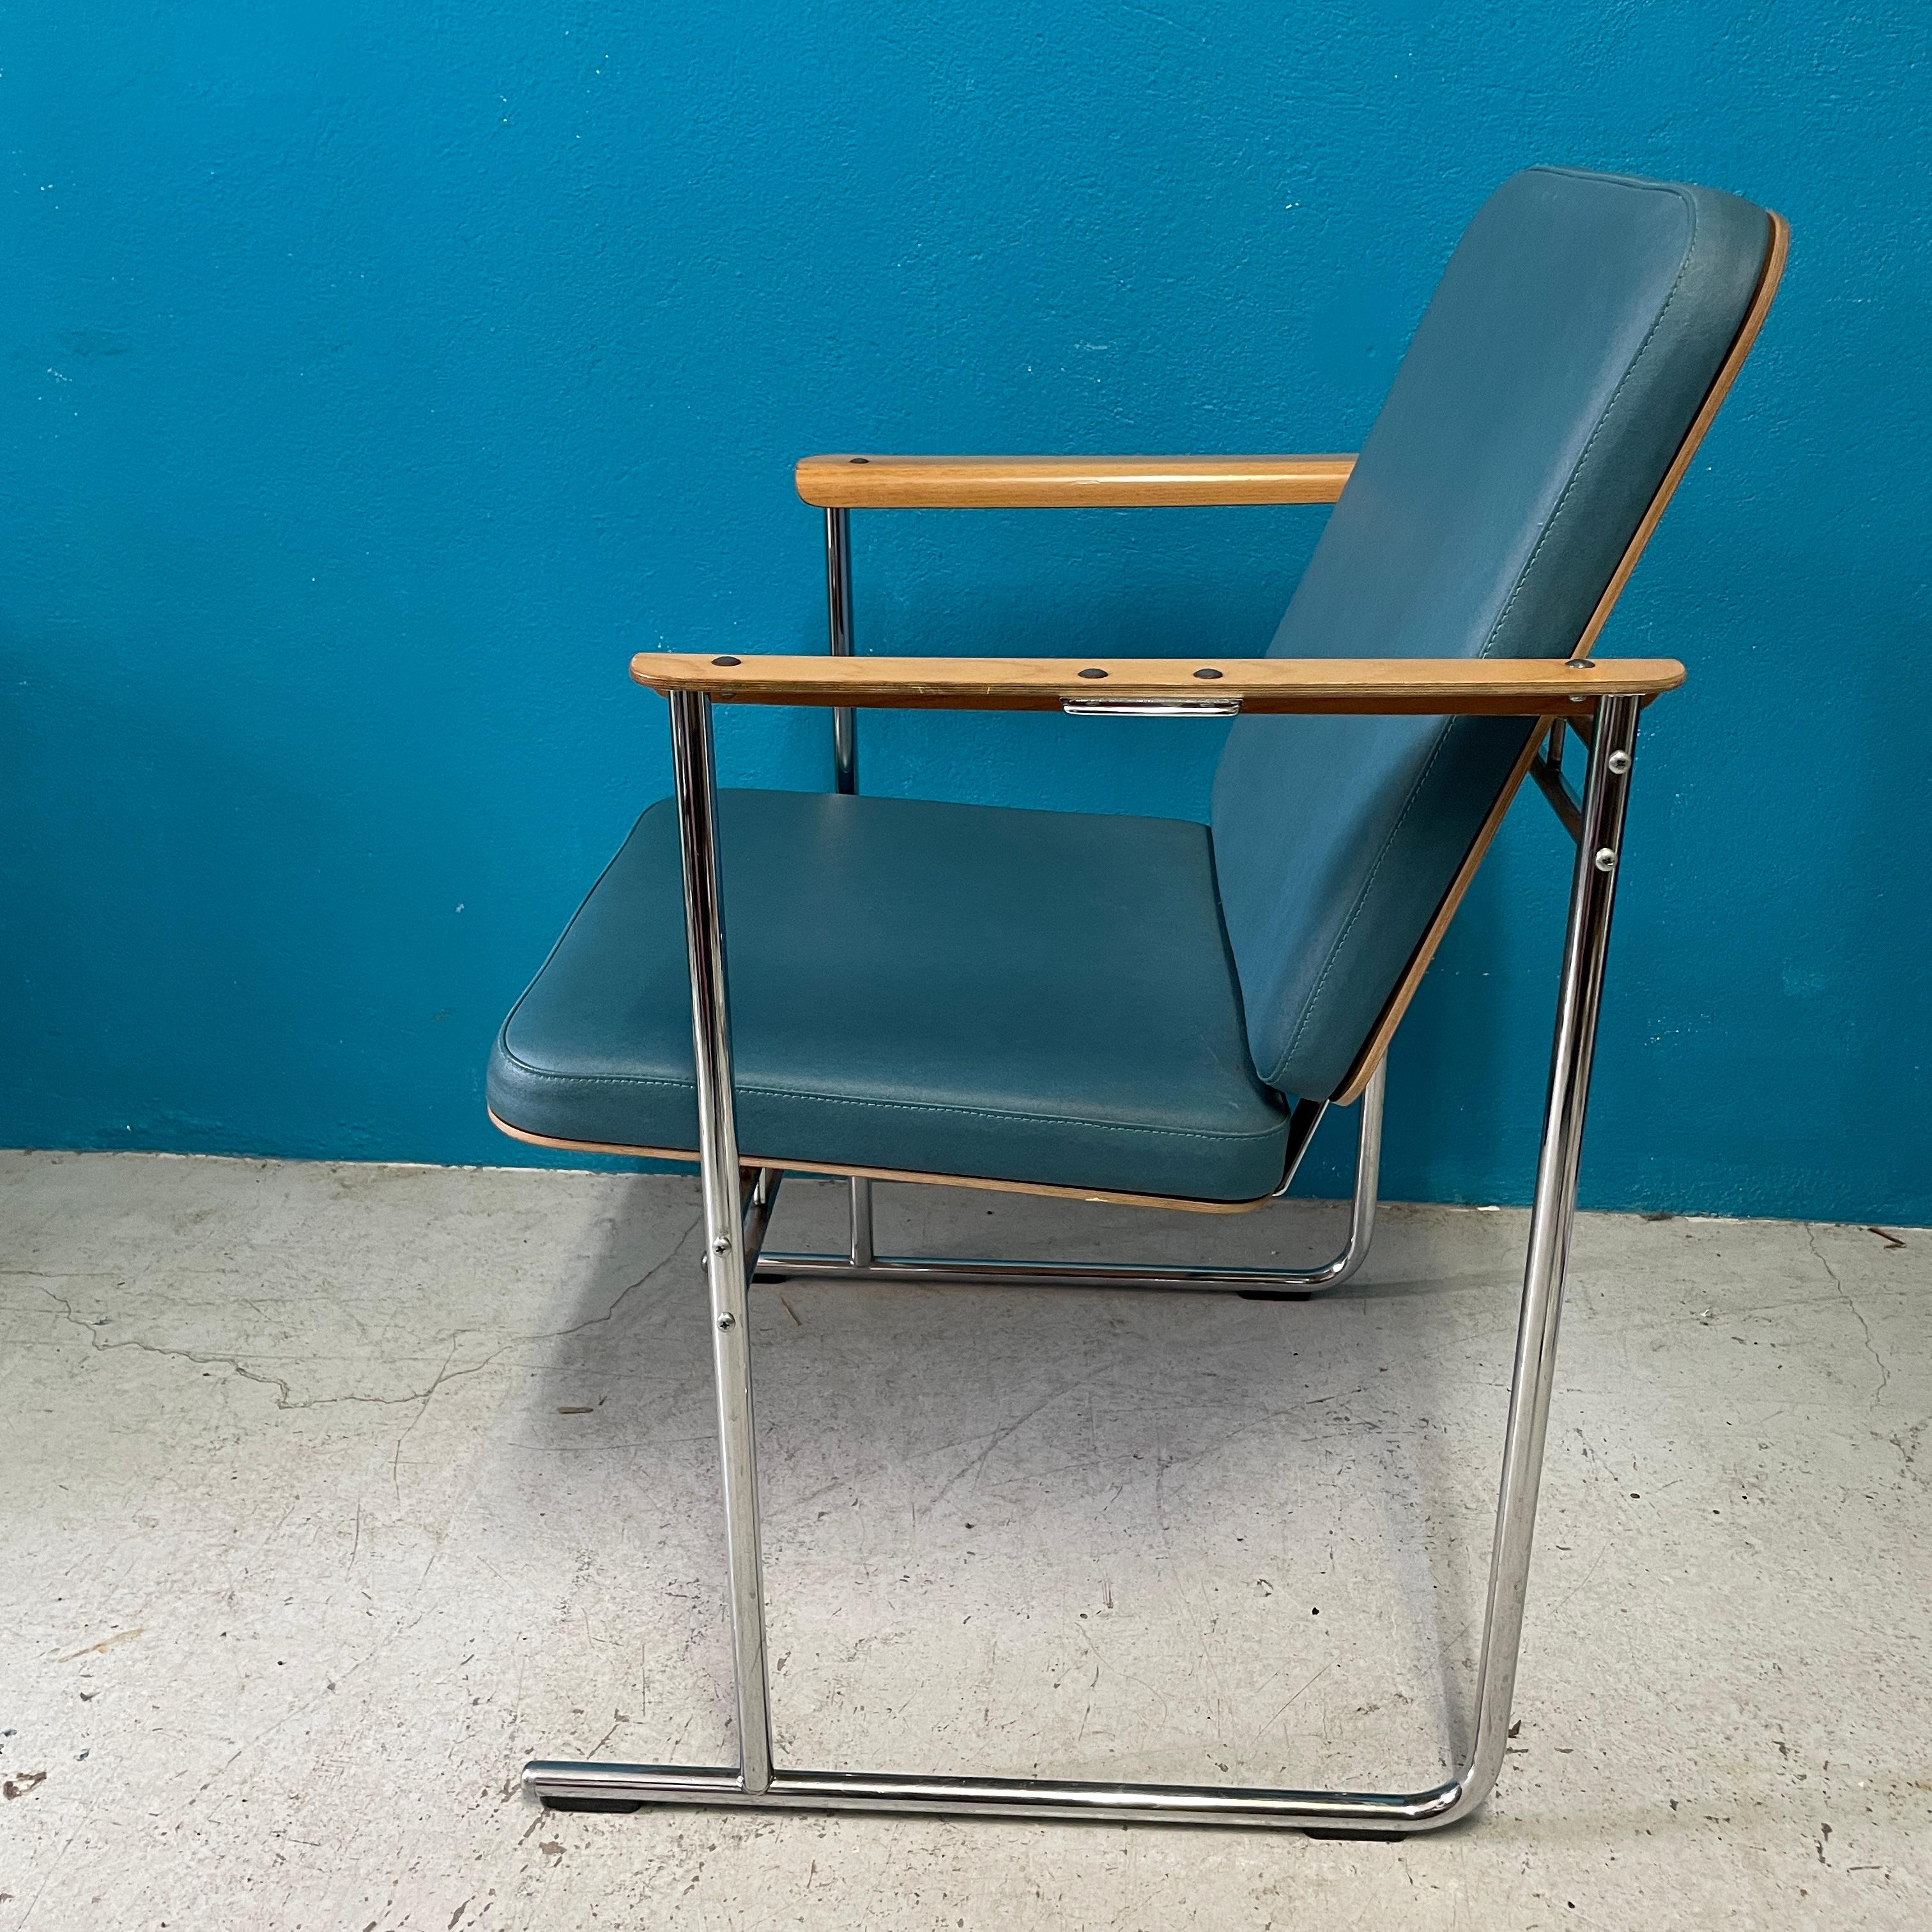 Skaala-Sessel, entworfen von Yrjö Kukkapuro für Avarte Finnland in den 1980er Jahren. 

Die von Kukkapuro entworfenen Stühle sind für ihre gute Ergonomie bekannt, und dieser Stuhl ist ein gutes Beispiel dafür.

Sitz, Rückenlehne und Armlehnen sind